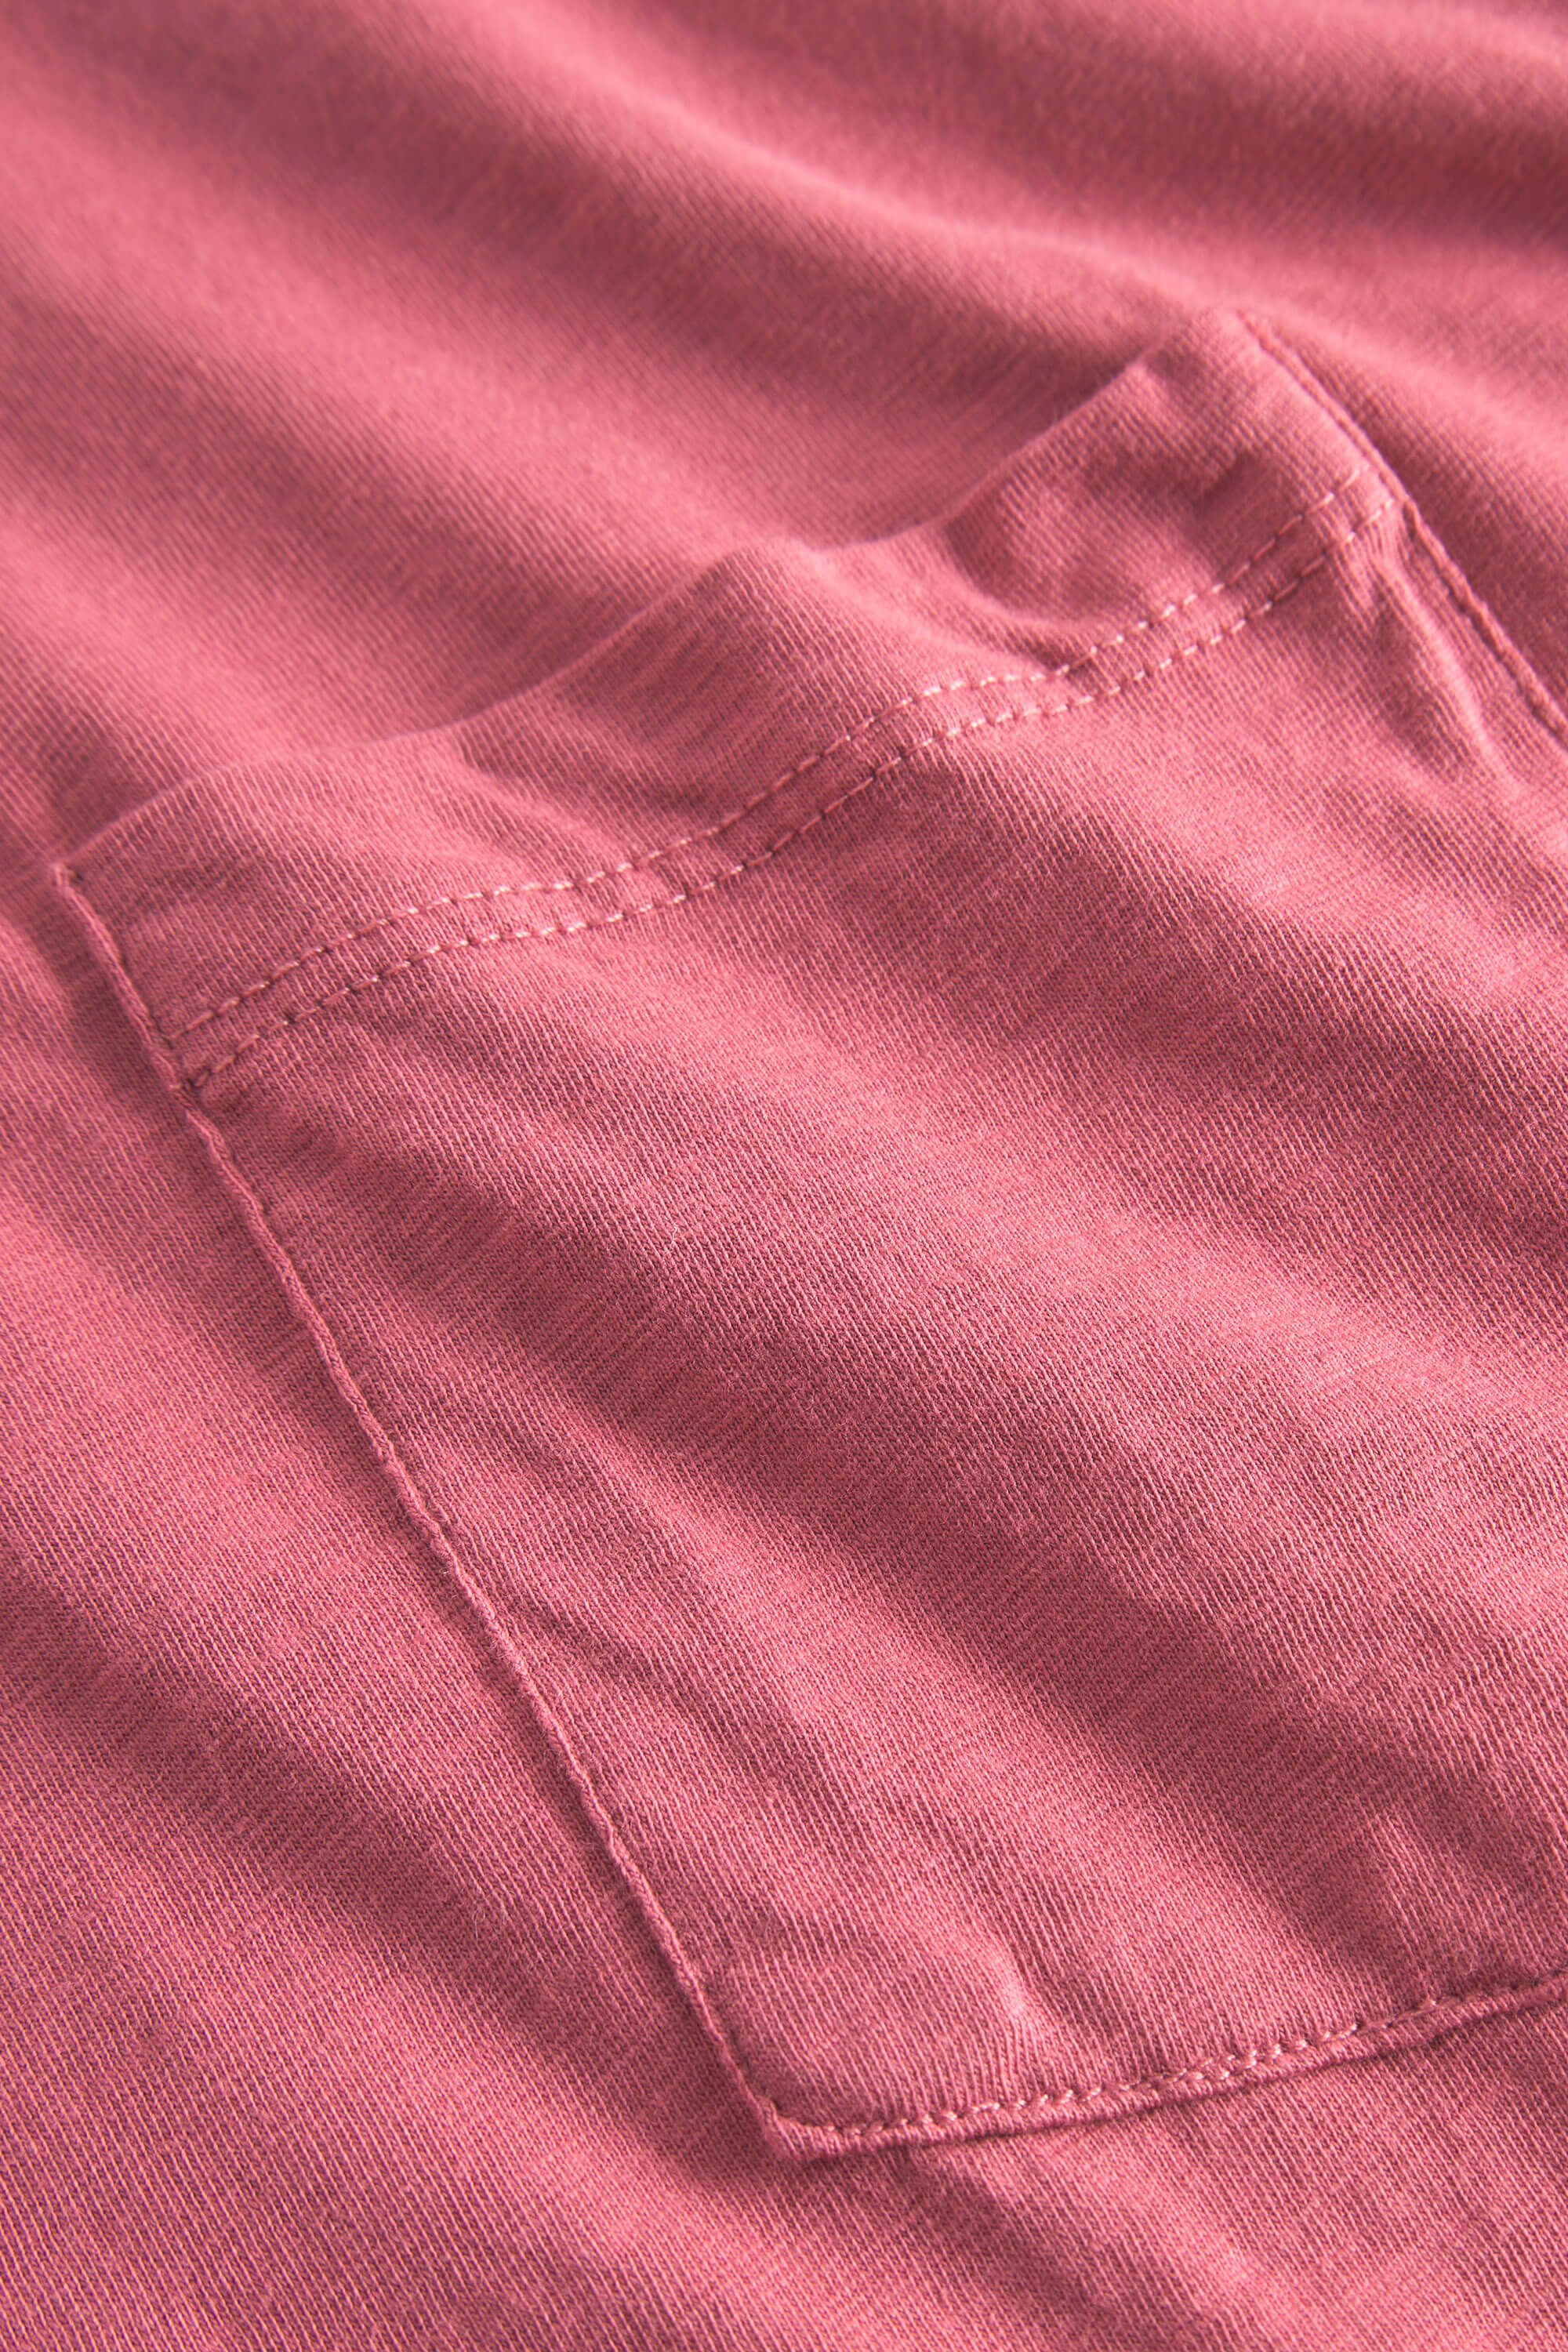 Herren Polo Shirt, rosa, 100% Baumwolle von Colours & Sons